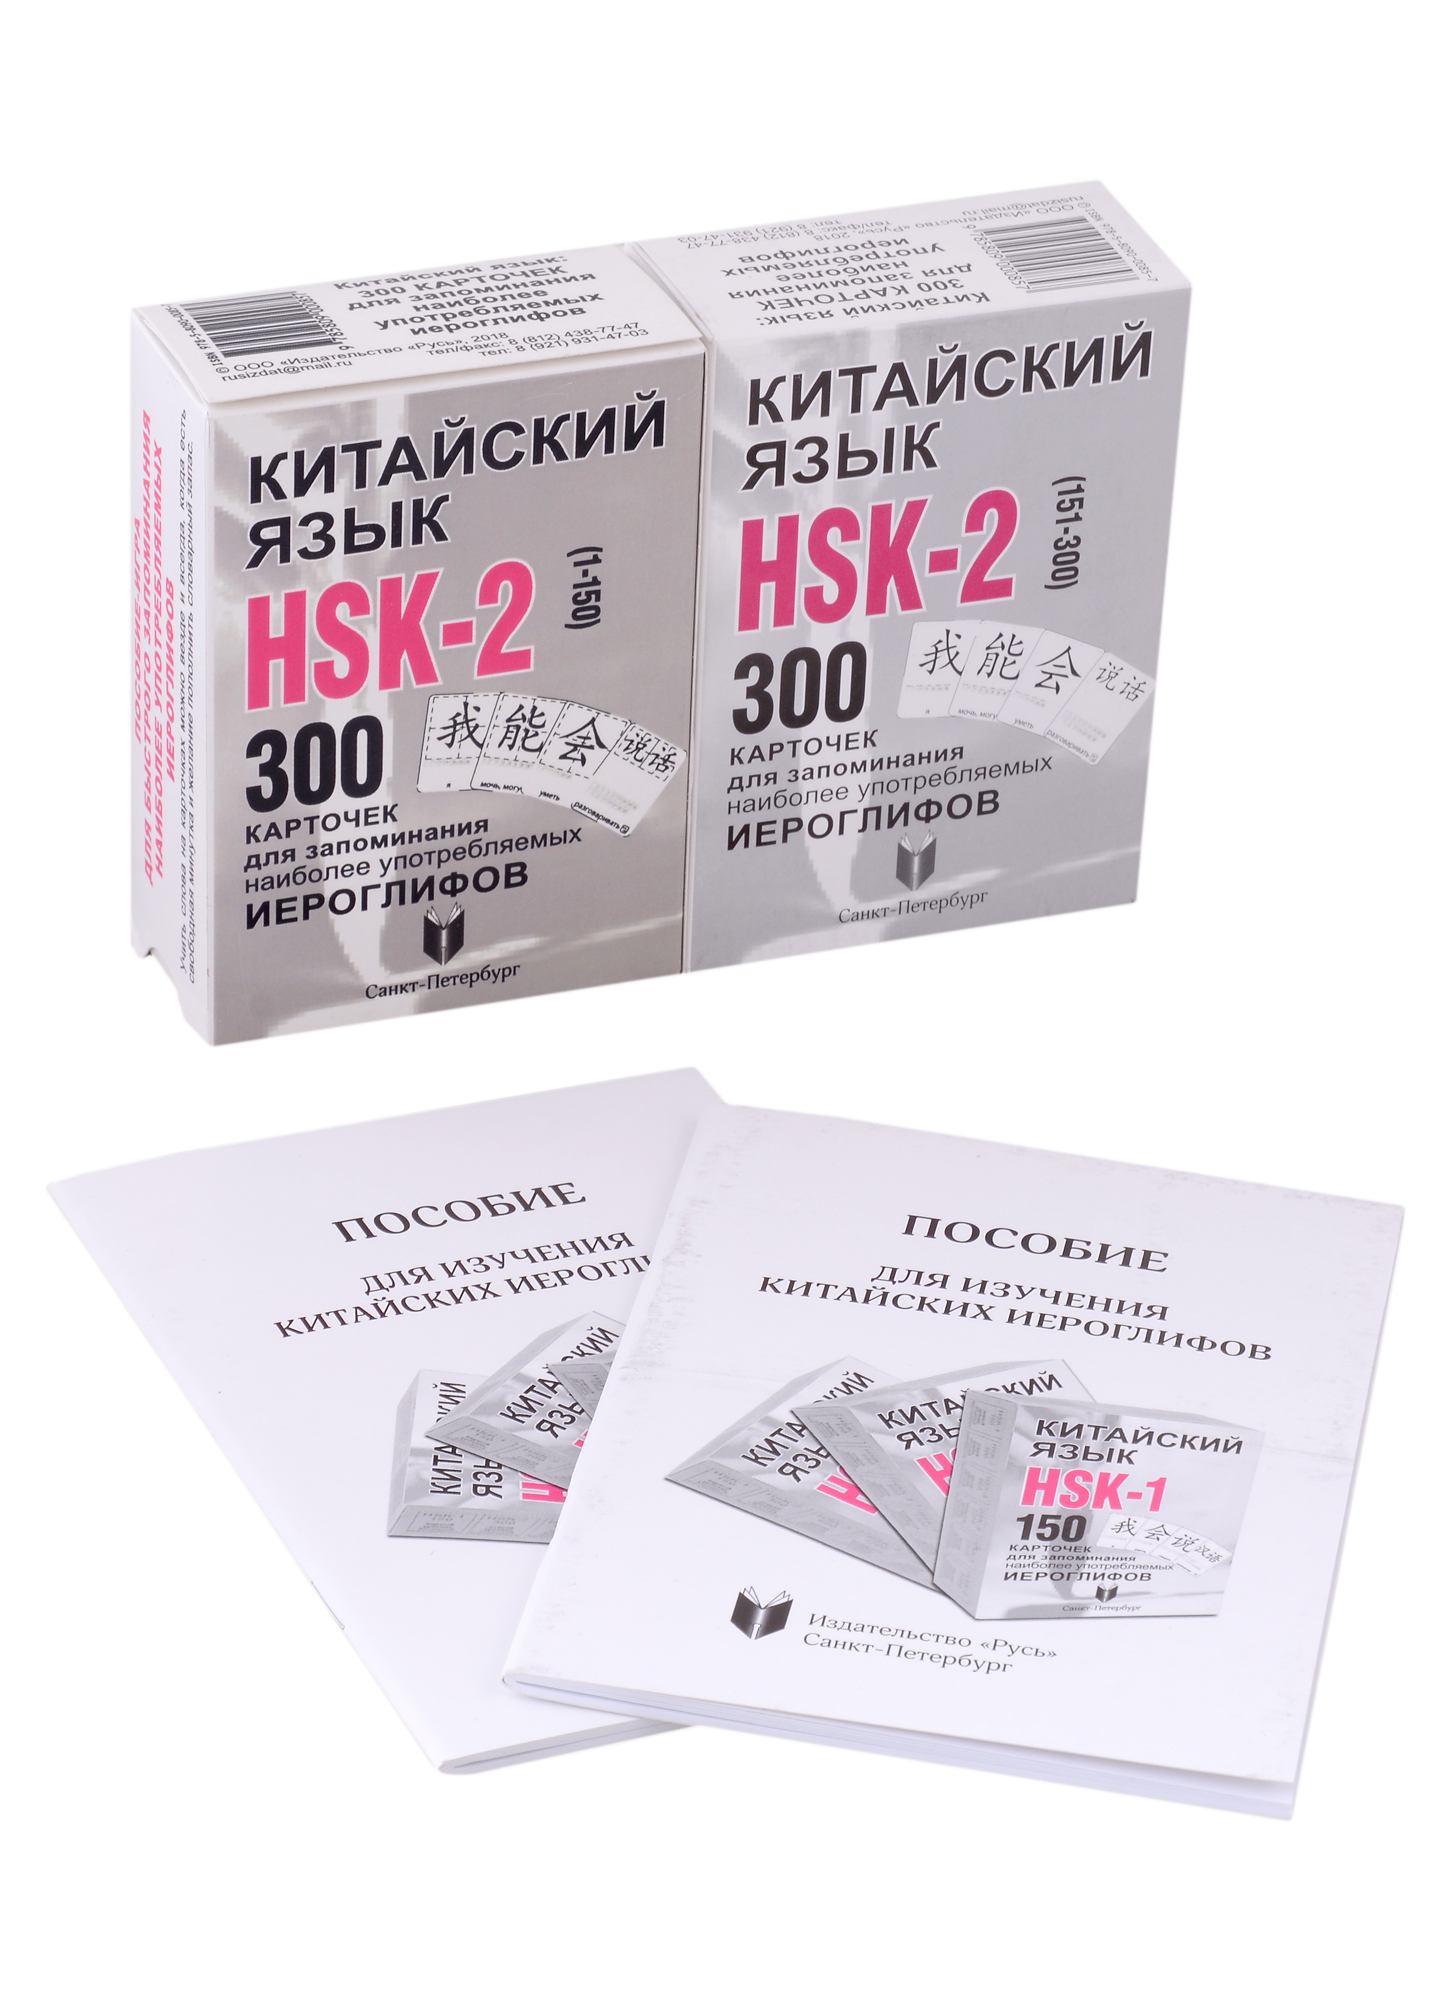 Китайский язык. Набор карточек HSK-2 и Пособие для изучения китайского языка константинова екатерина александровна карточки для изучения иероглифов 150 карточек соответствующих первому уровню hsk в коробке